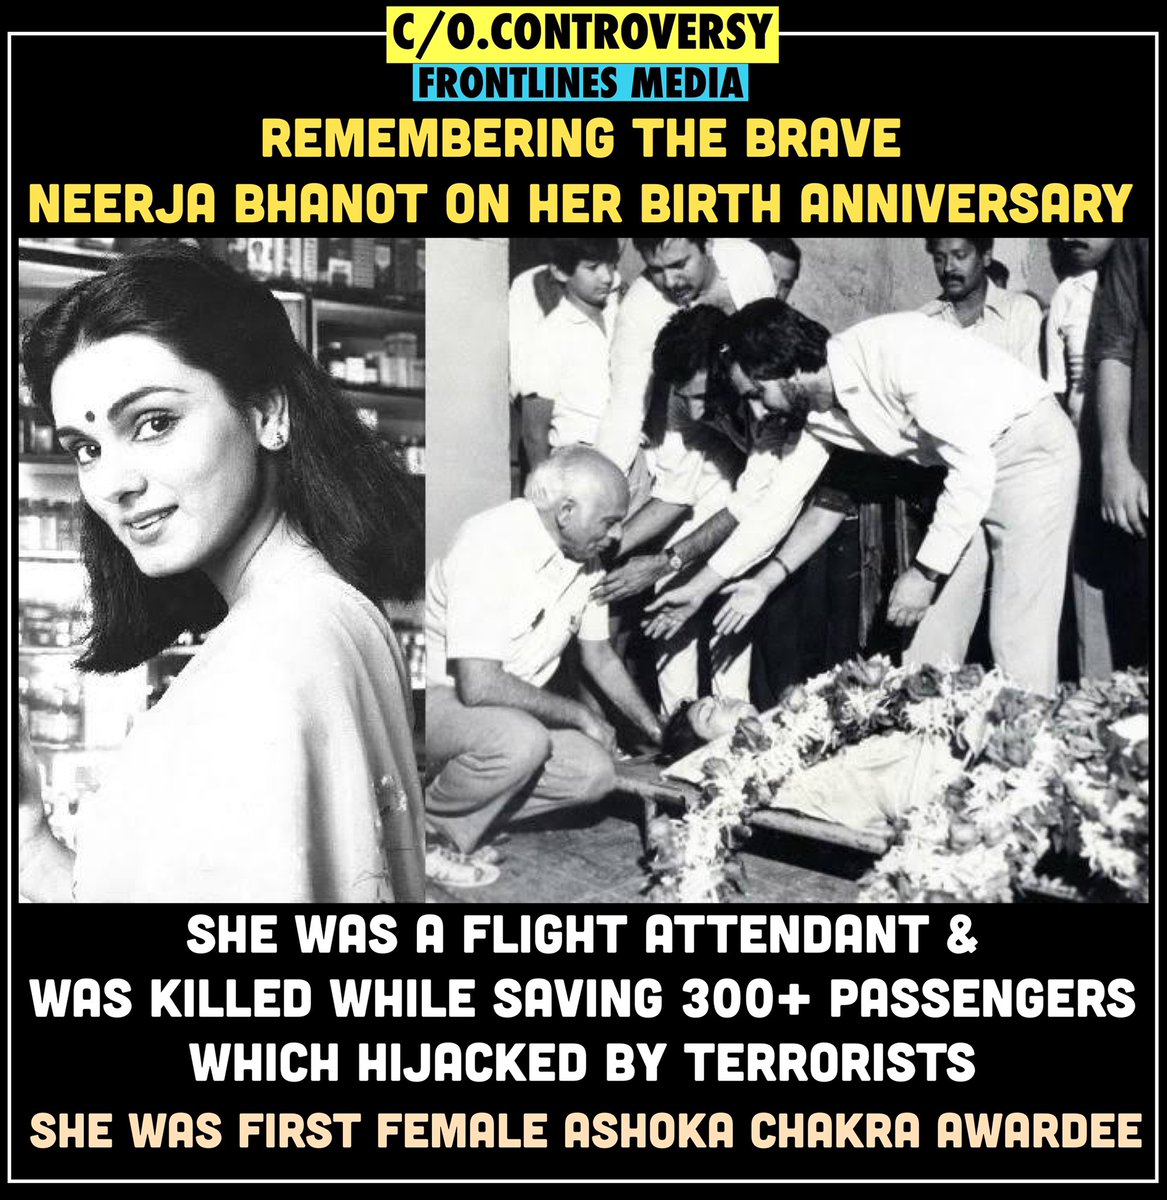 Remembering #NeerjaBhanot 
Who saved 300+ passengers scarifying her life!

#NeerjaBhanot